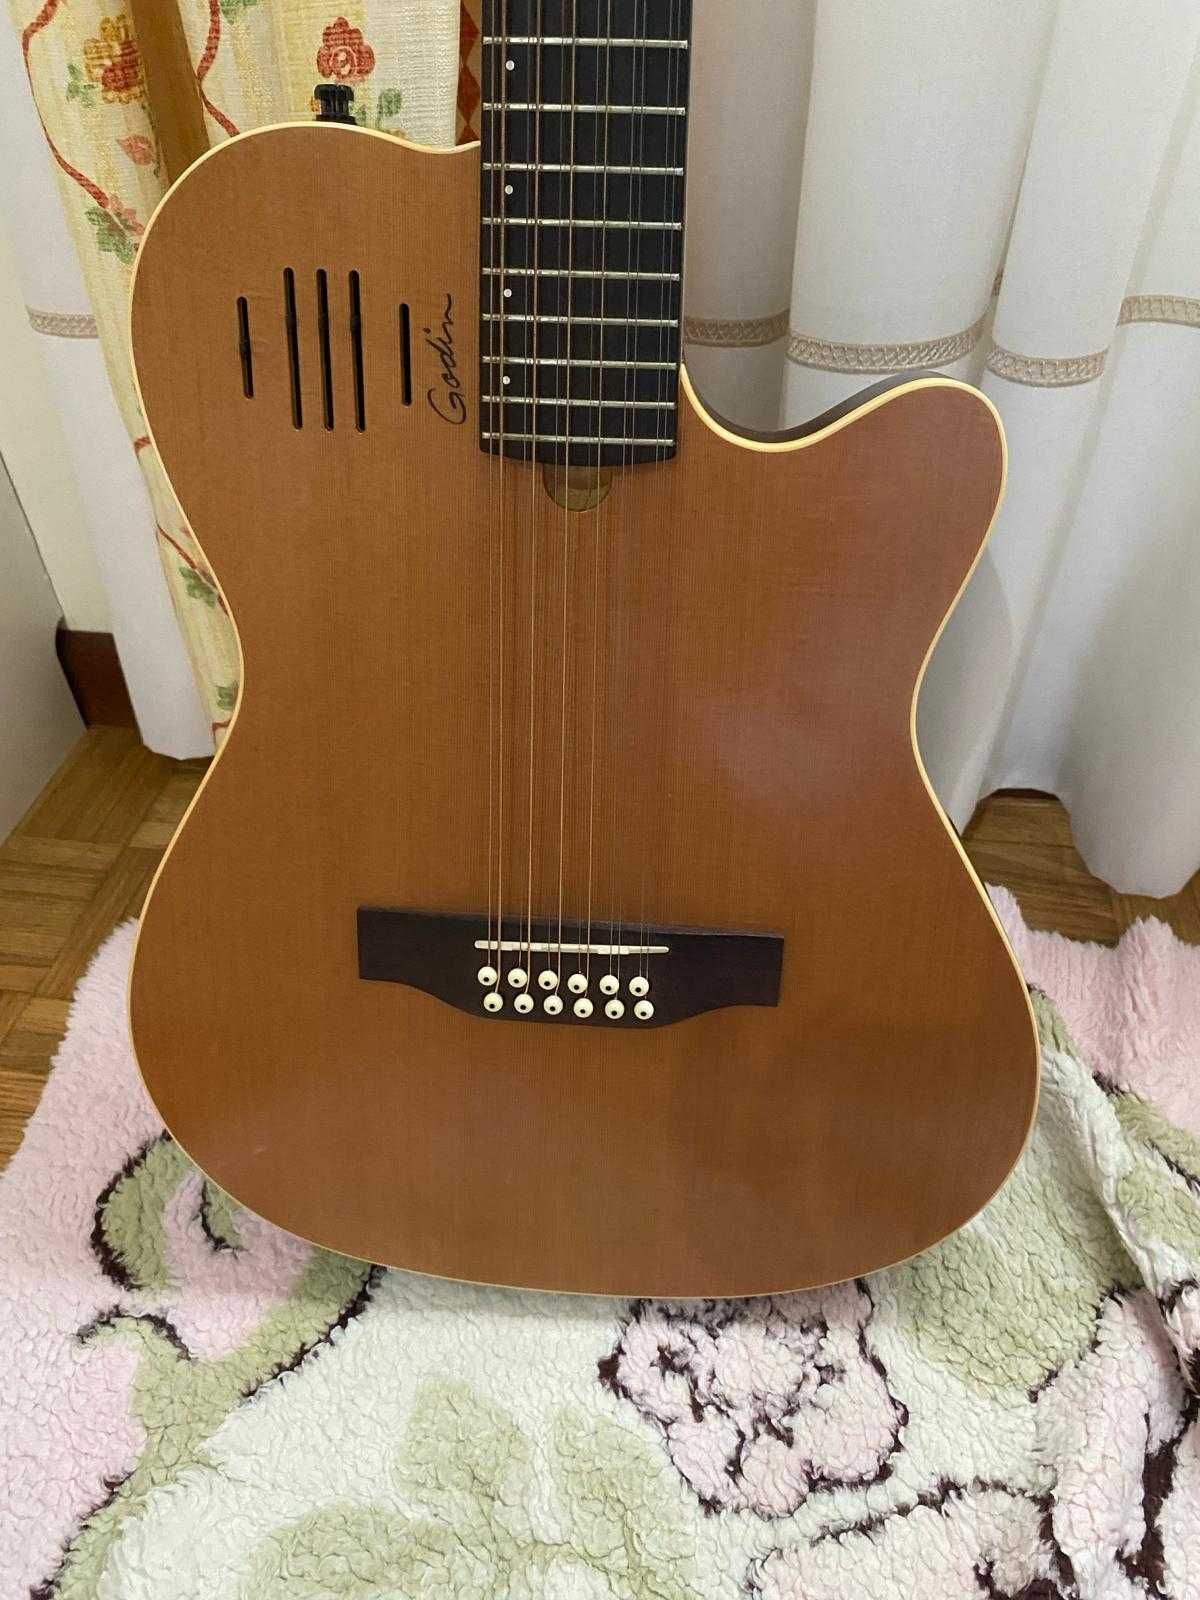 Guitarra 12 cordas Godin A12 (baixa de preço de 200€, para despachar)